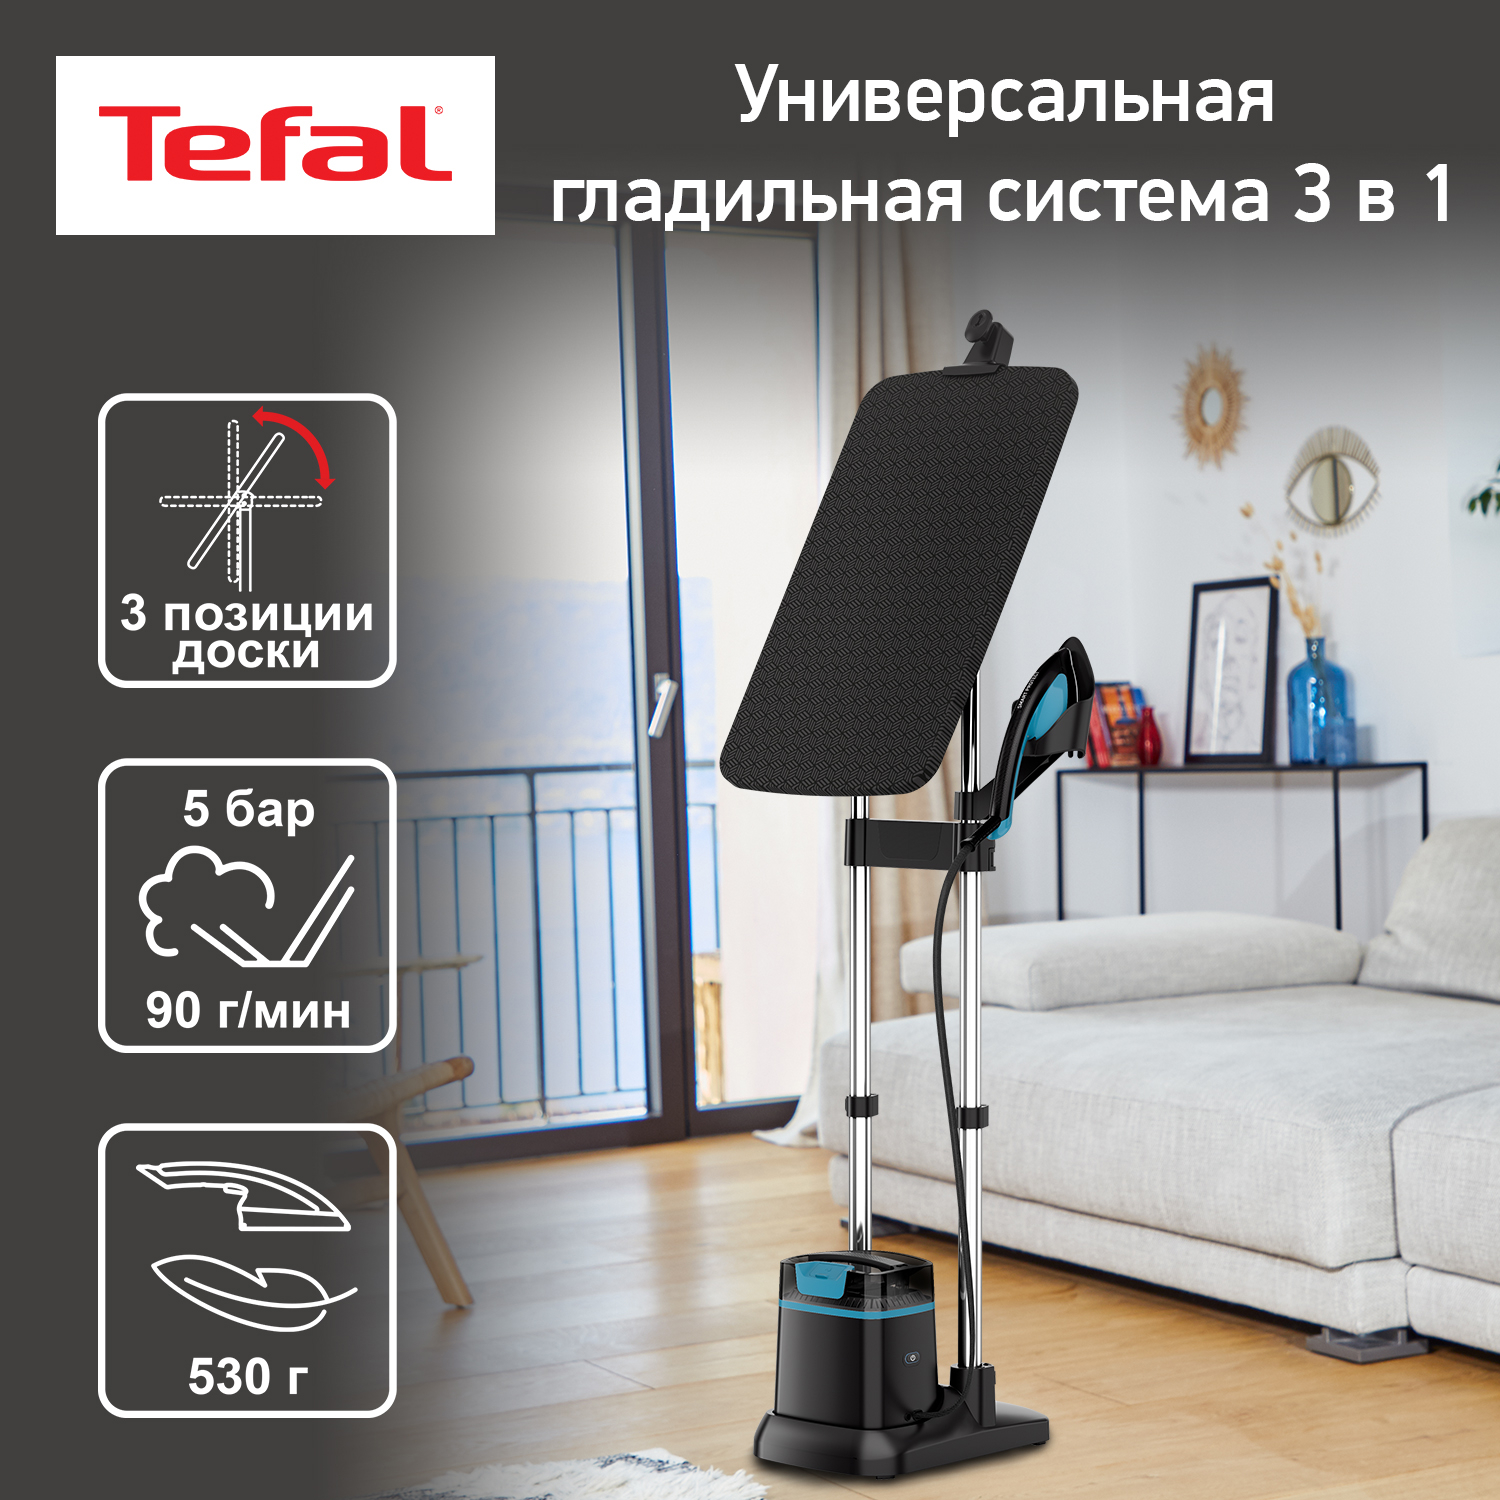 Паровая гладильная система Tefal IXEO QT1511E0 3 в 1, 1 л, черный/голубой, купить в Москве, цены в интернет-магазинах на Мегамаркет